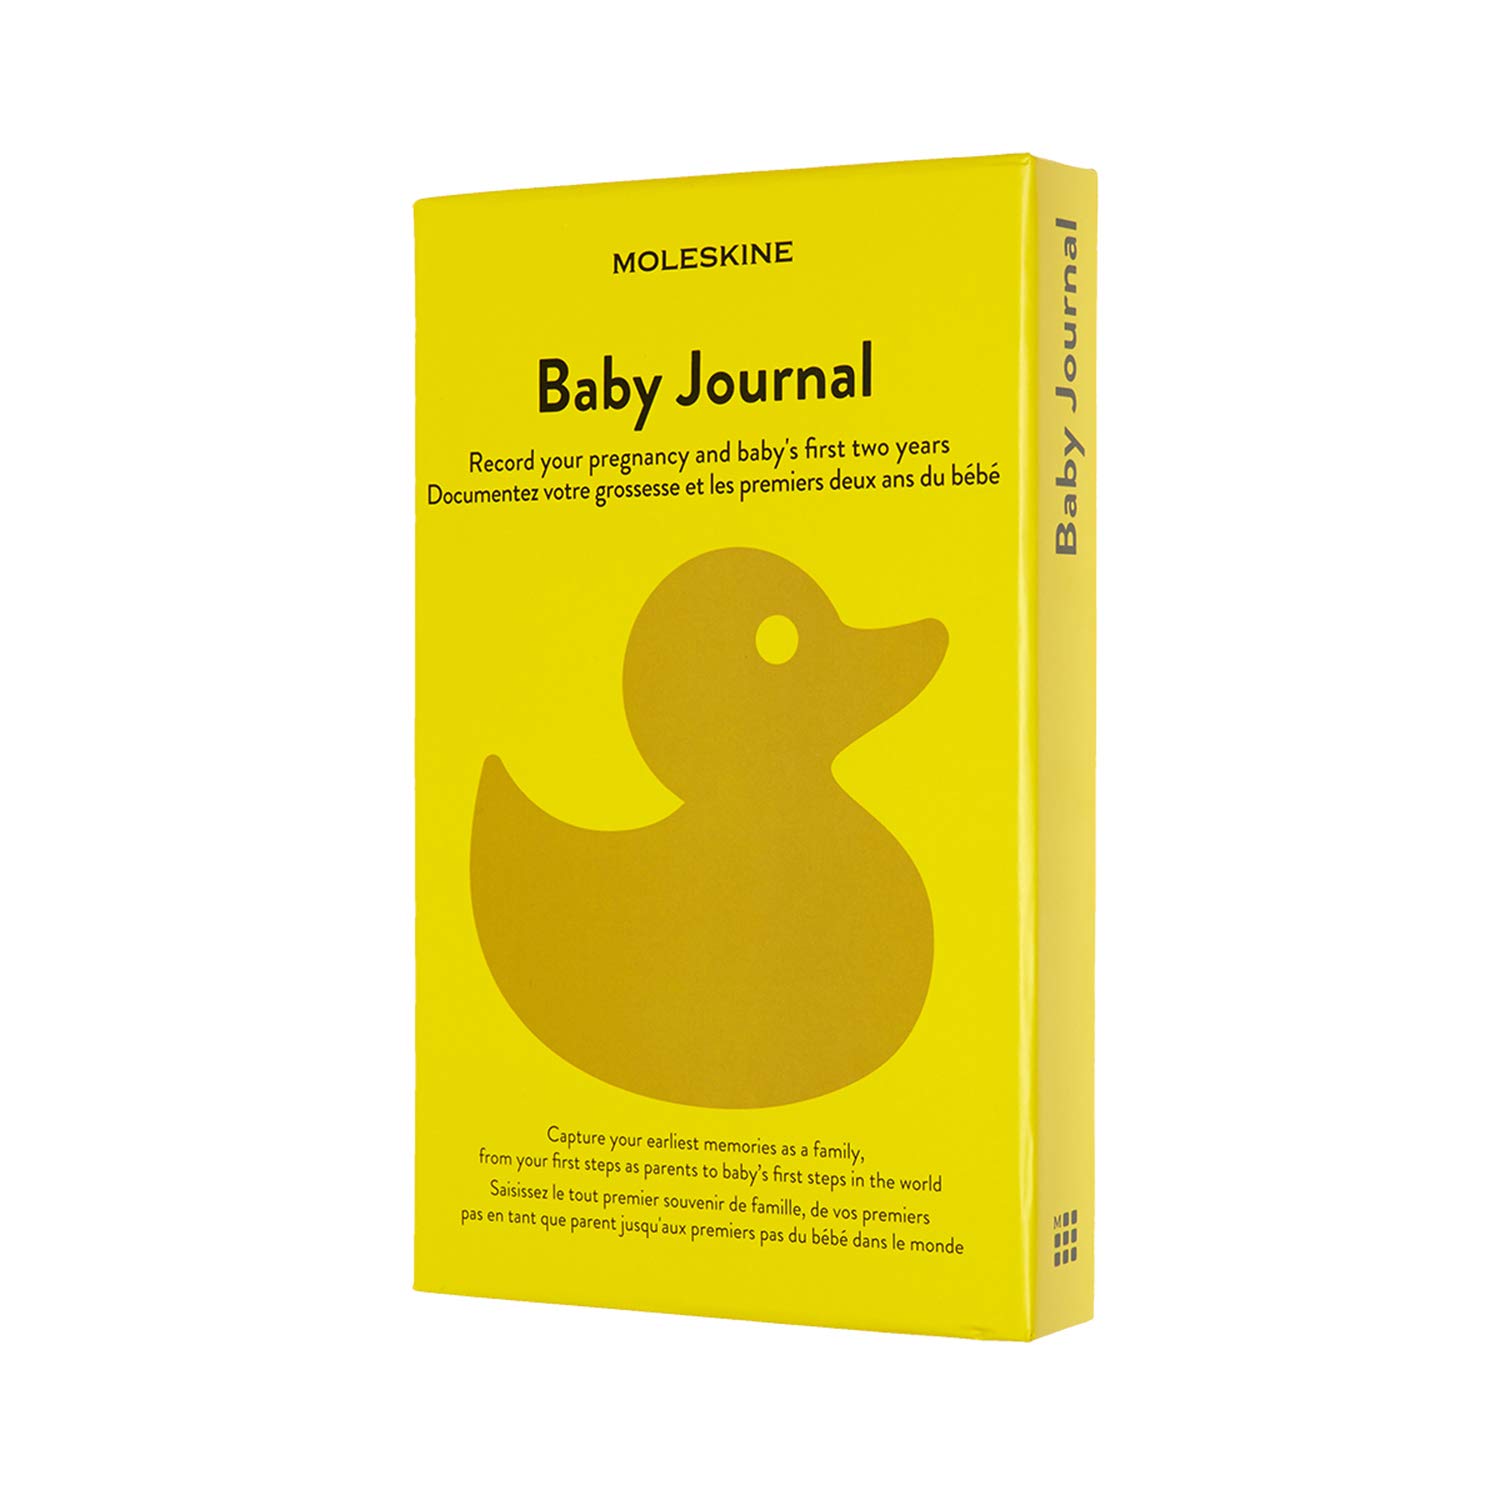 Moleskine - Baby Journal, Thema Notizbuch - Hardcover Notizbuch zum Annotieren und Erinnern der ersten zwei Jahre im Leben Ihres Kindes - Großes Format 13 x 21 cm - 400 Seiten